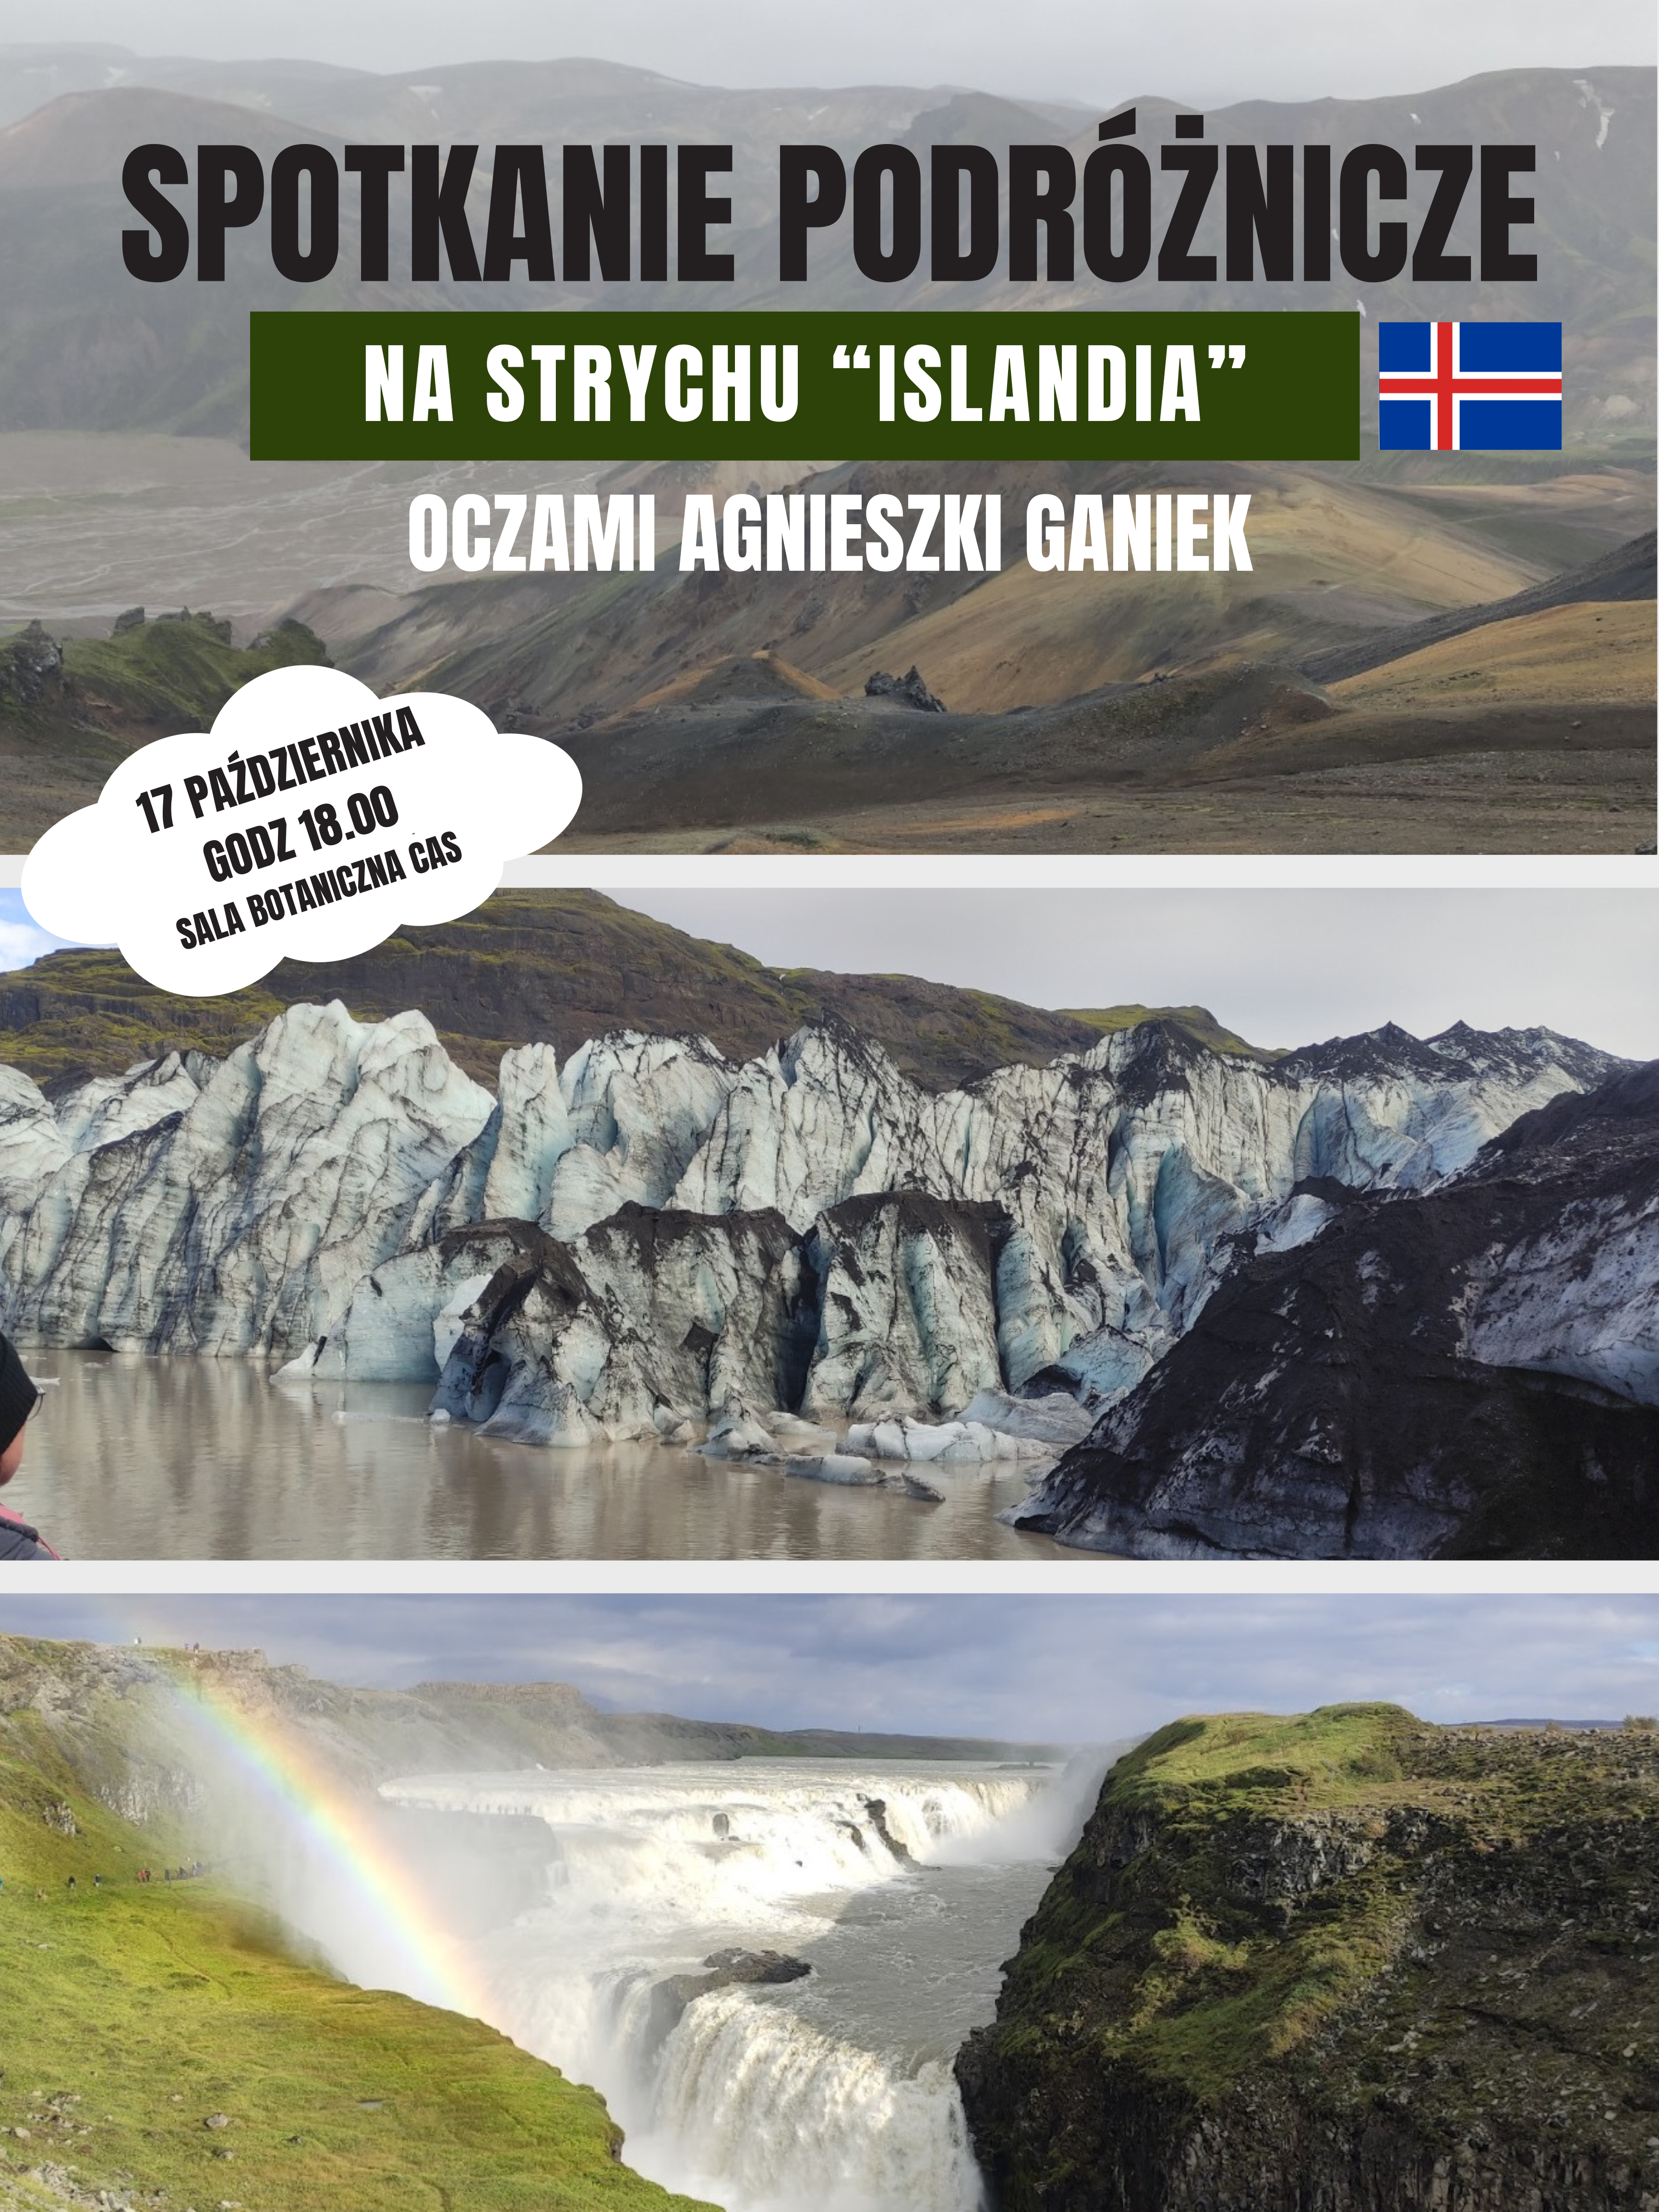 Spotkanie Podróżnicze na Strychu – Islandia oczami Agnieszki Ganiek 17.10